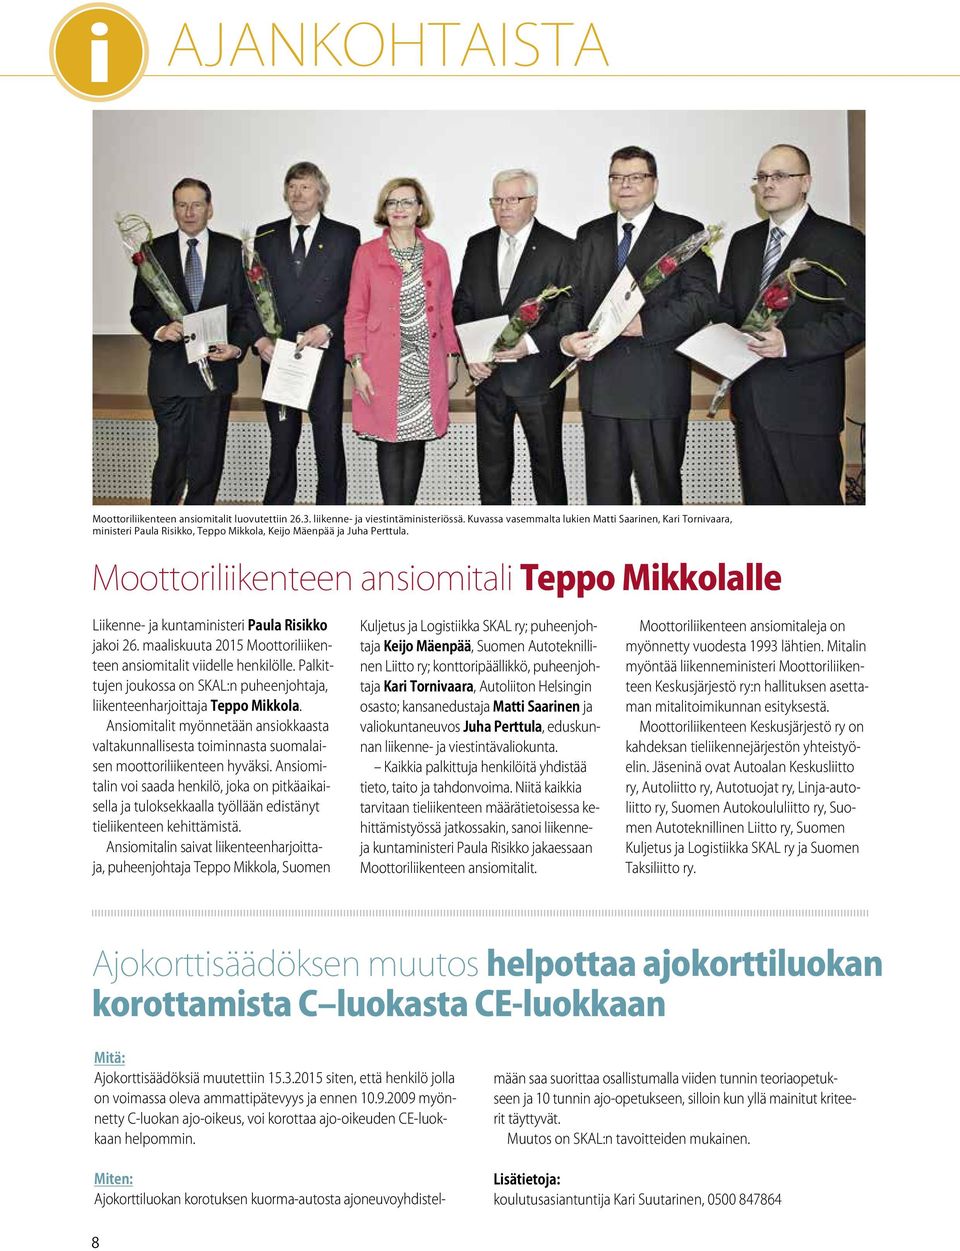 Moottoriliikenteen ansiomitali Teppo Mikkolalle Liikenne- ja kuntaministeri Paula Risikko jakoi 26. maaliskuuta 2015 Moottoriliikenteen ansiomitalit viidelle henkilölle.